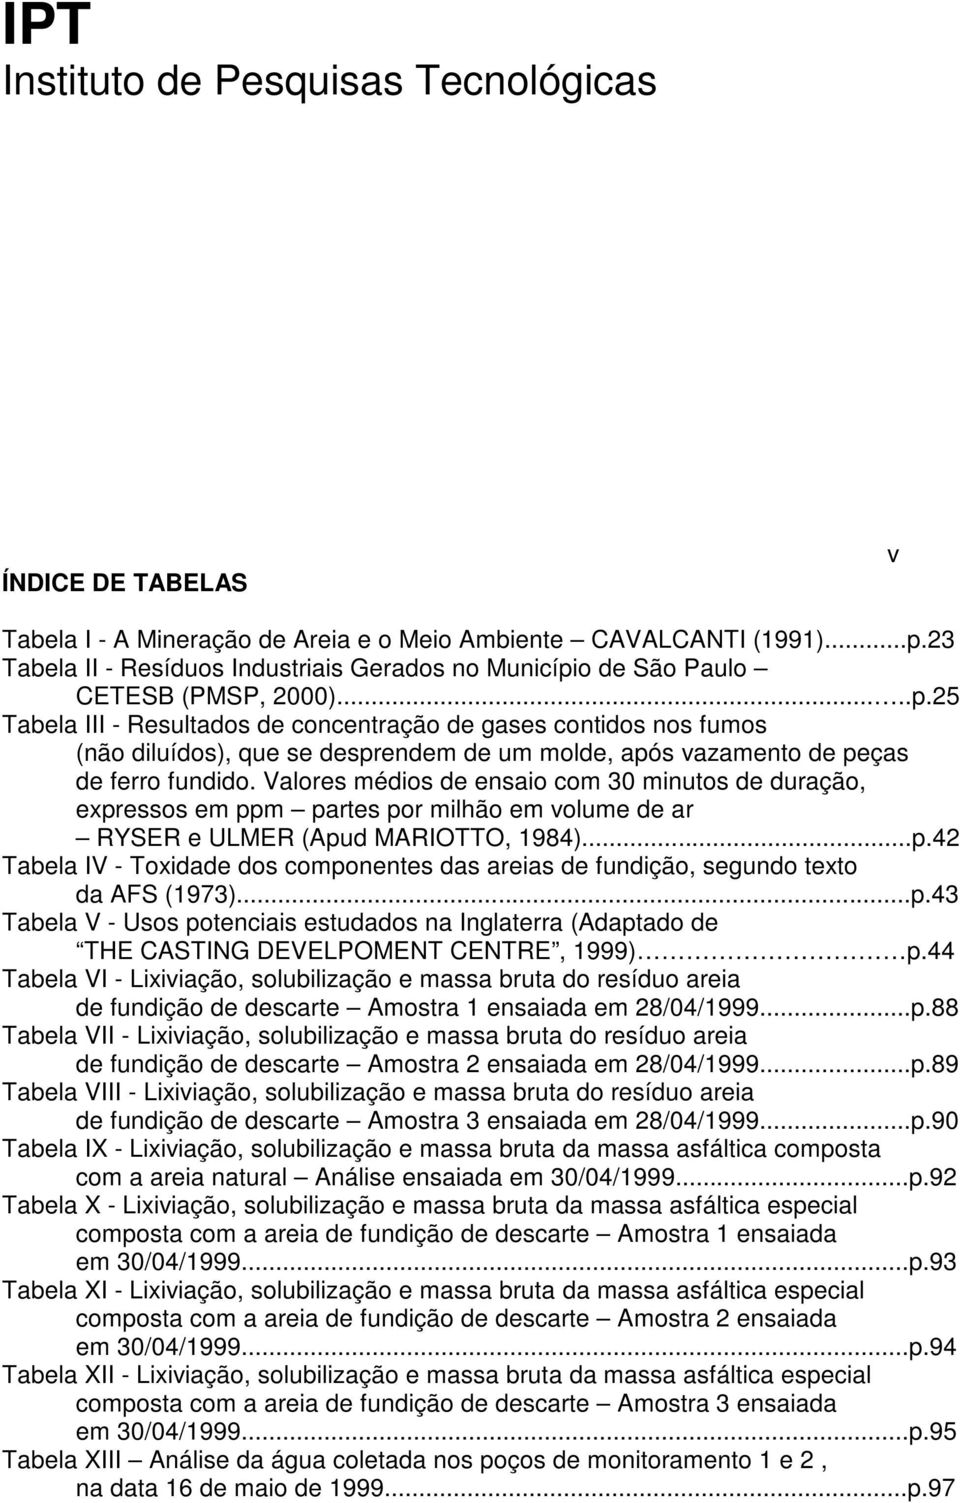 o de São Paulo CETESB (PMSP, 2000).....p.25 Tabela III - Resultados de concentração de gases contidos nos fumos (não diluídos), que se desprendem de um molde, após vazamento de peças de ferro fundido.